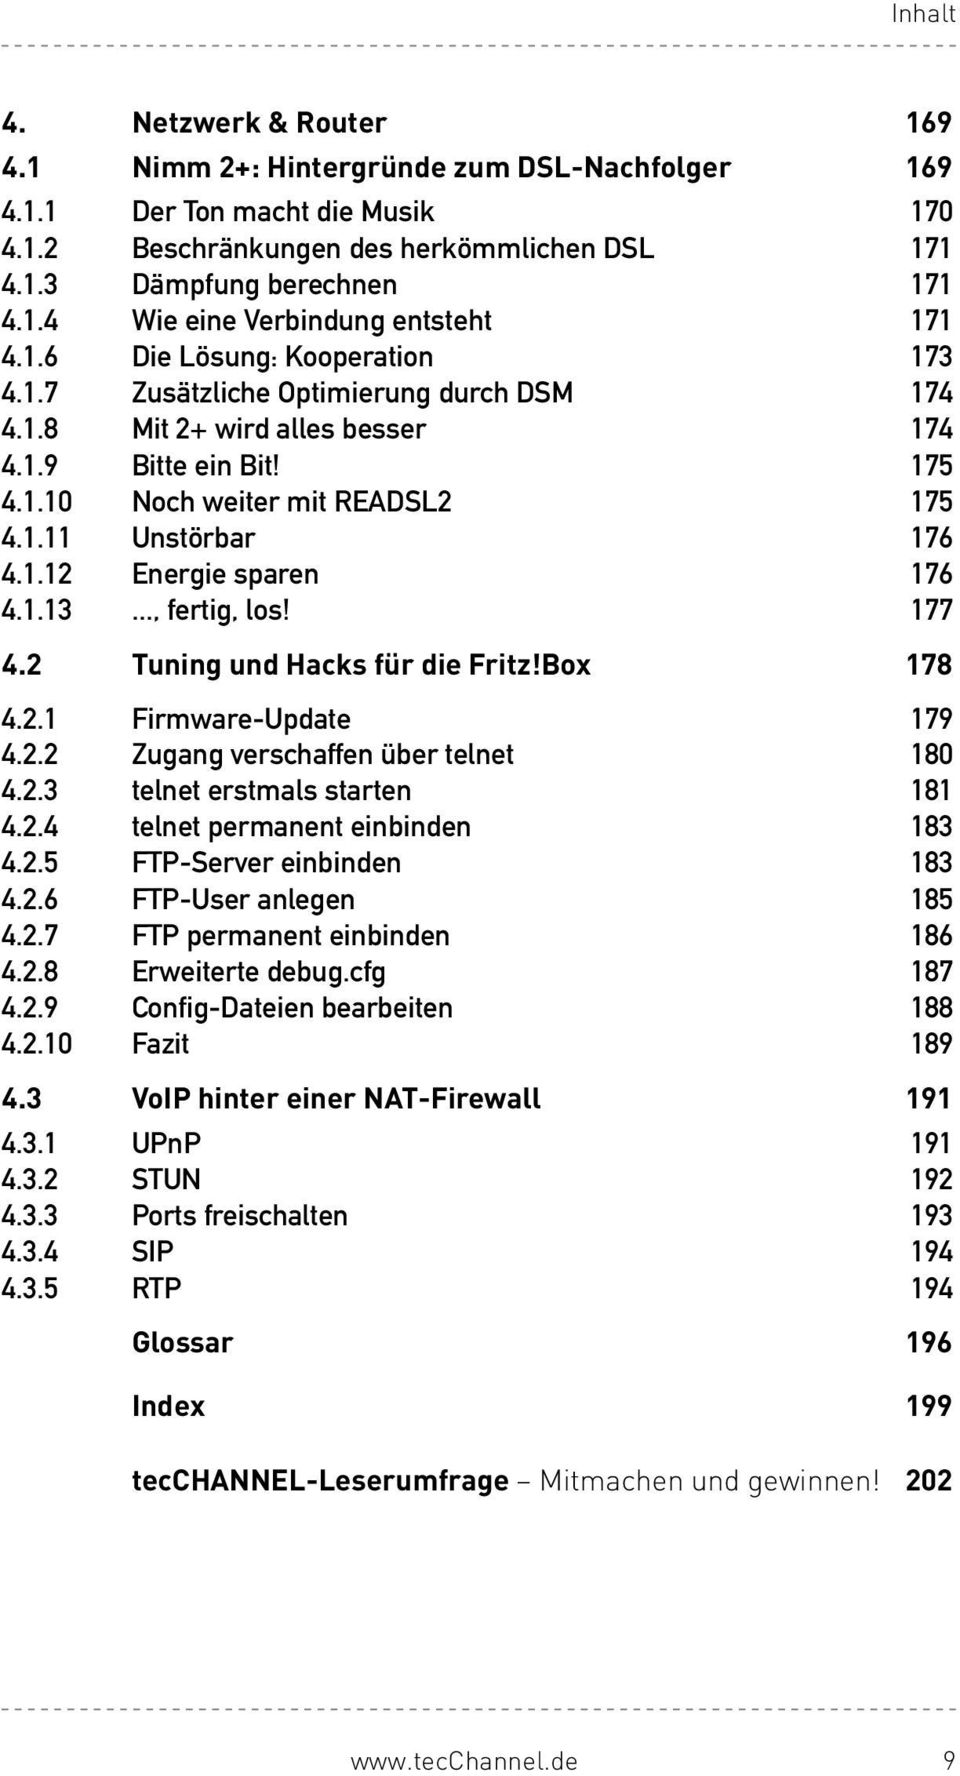 1.13..., fertig, los! 177 4.2 Tuning und Hacks für die Fritz!Box 178 4.2.1 Firmware-Update 179 4.2.2 Zugang verschaffen über telnet 180 4.2.3 telnet erstmals starten 181 4.2.4 telnet permanent einbinden 183 4.